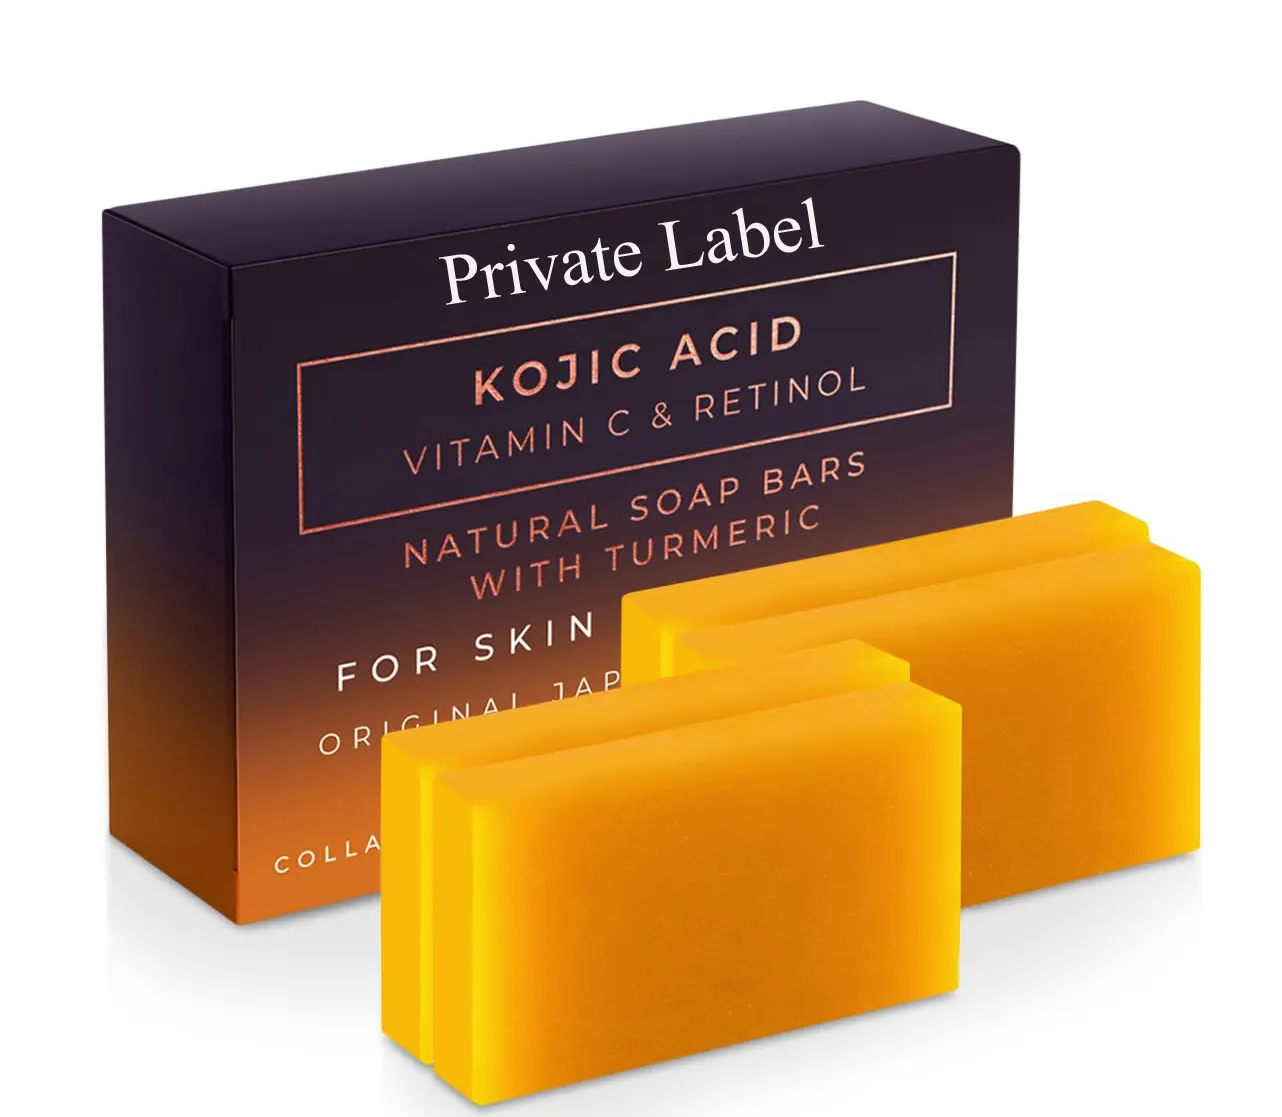 Etichetta privata all'ingrosso sapone acido kojico originale rimozione macchie scure natura limone miele acido kojico per la pelle sbiancante sapone tumerico